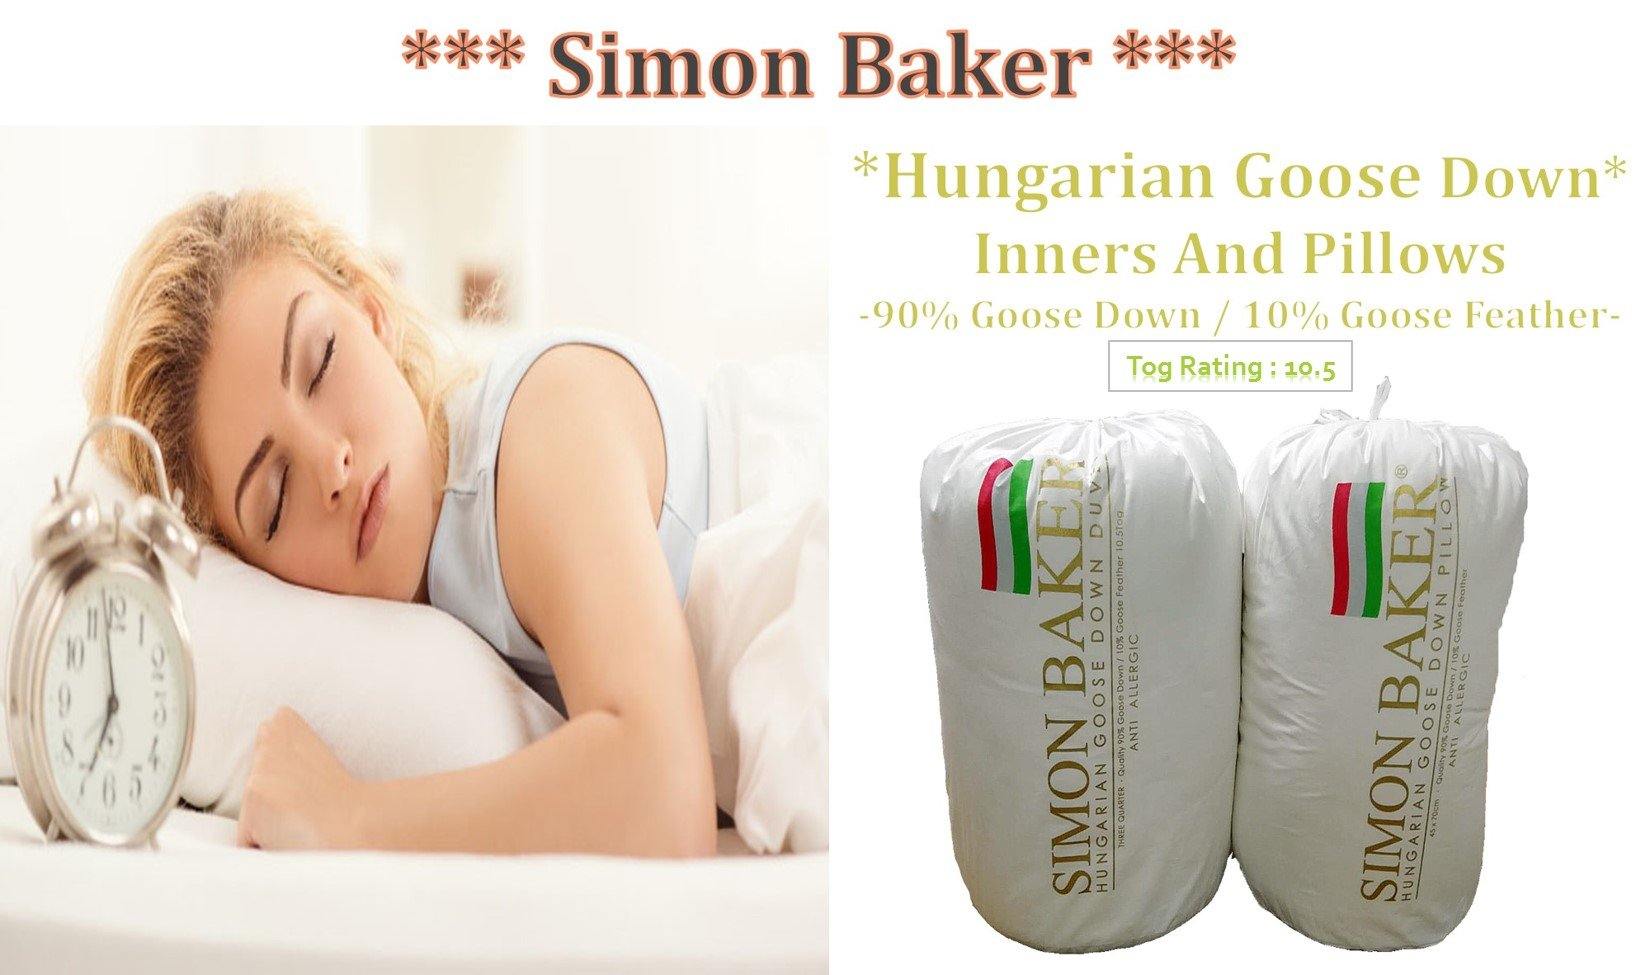 Simon Baker | Hungarian Goose Down Duvet Inner Super King (90/10)